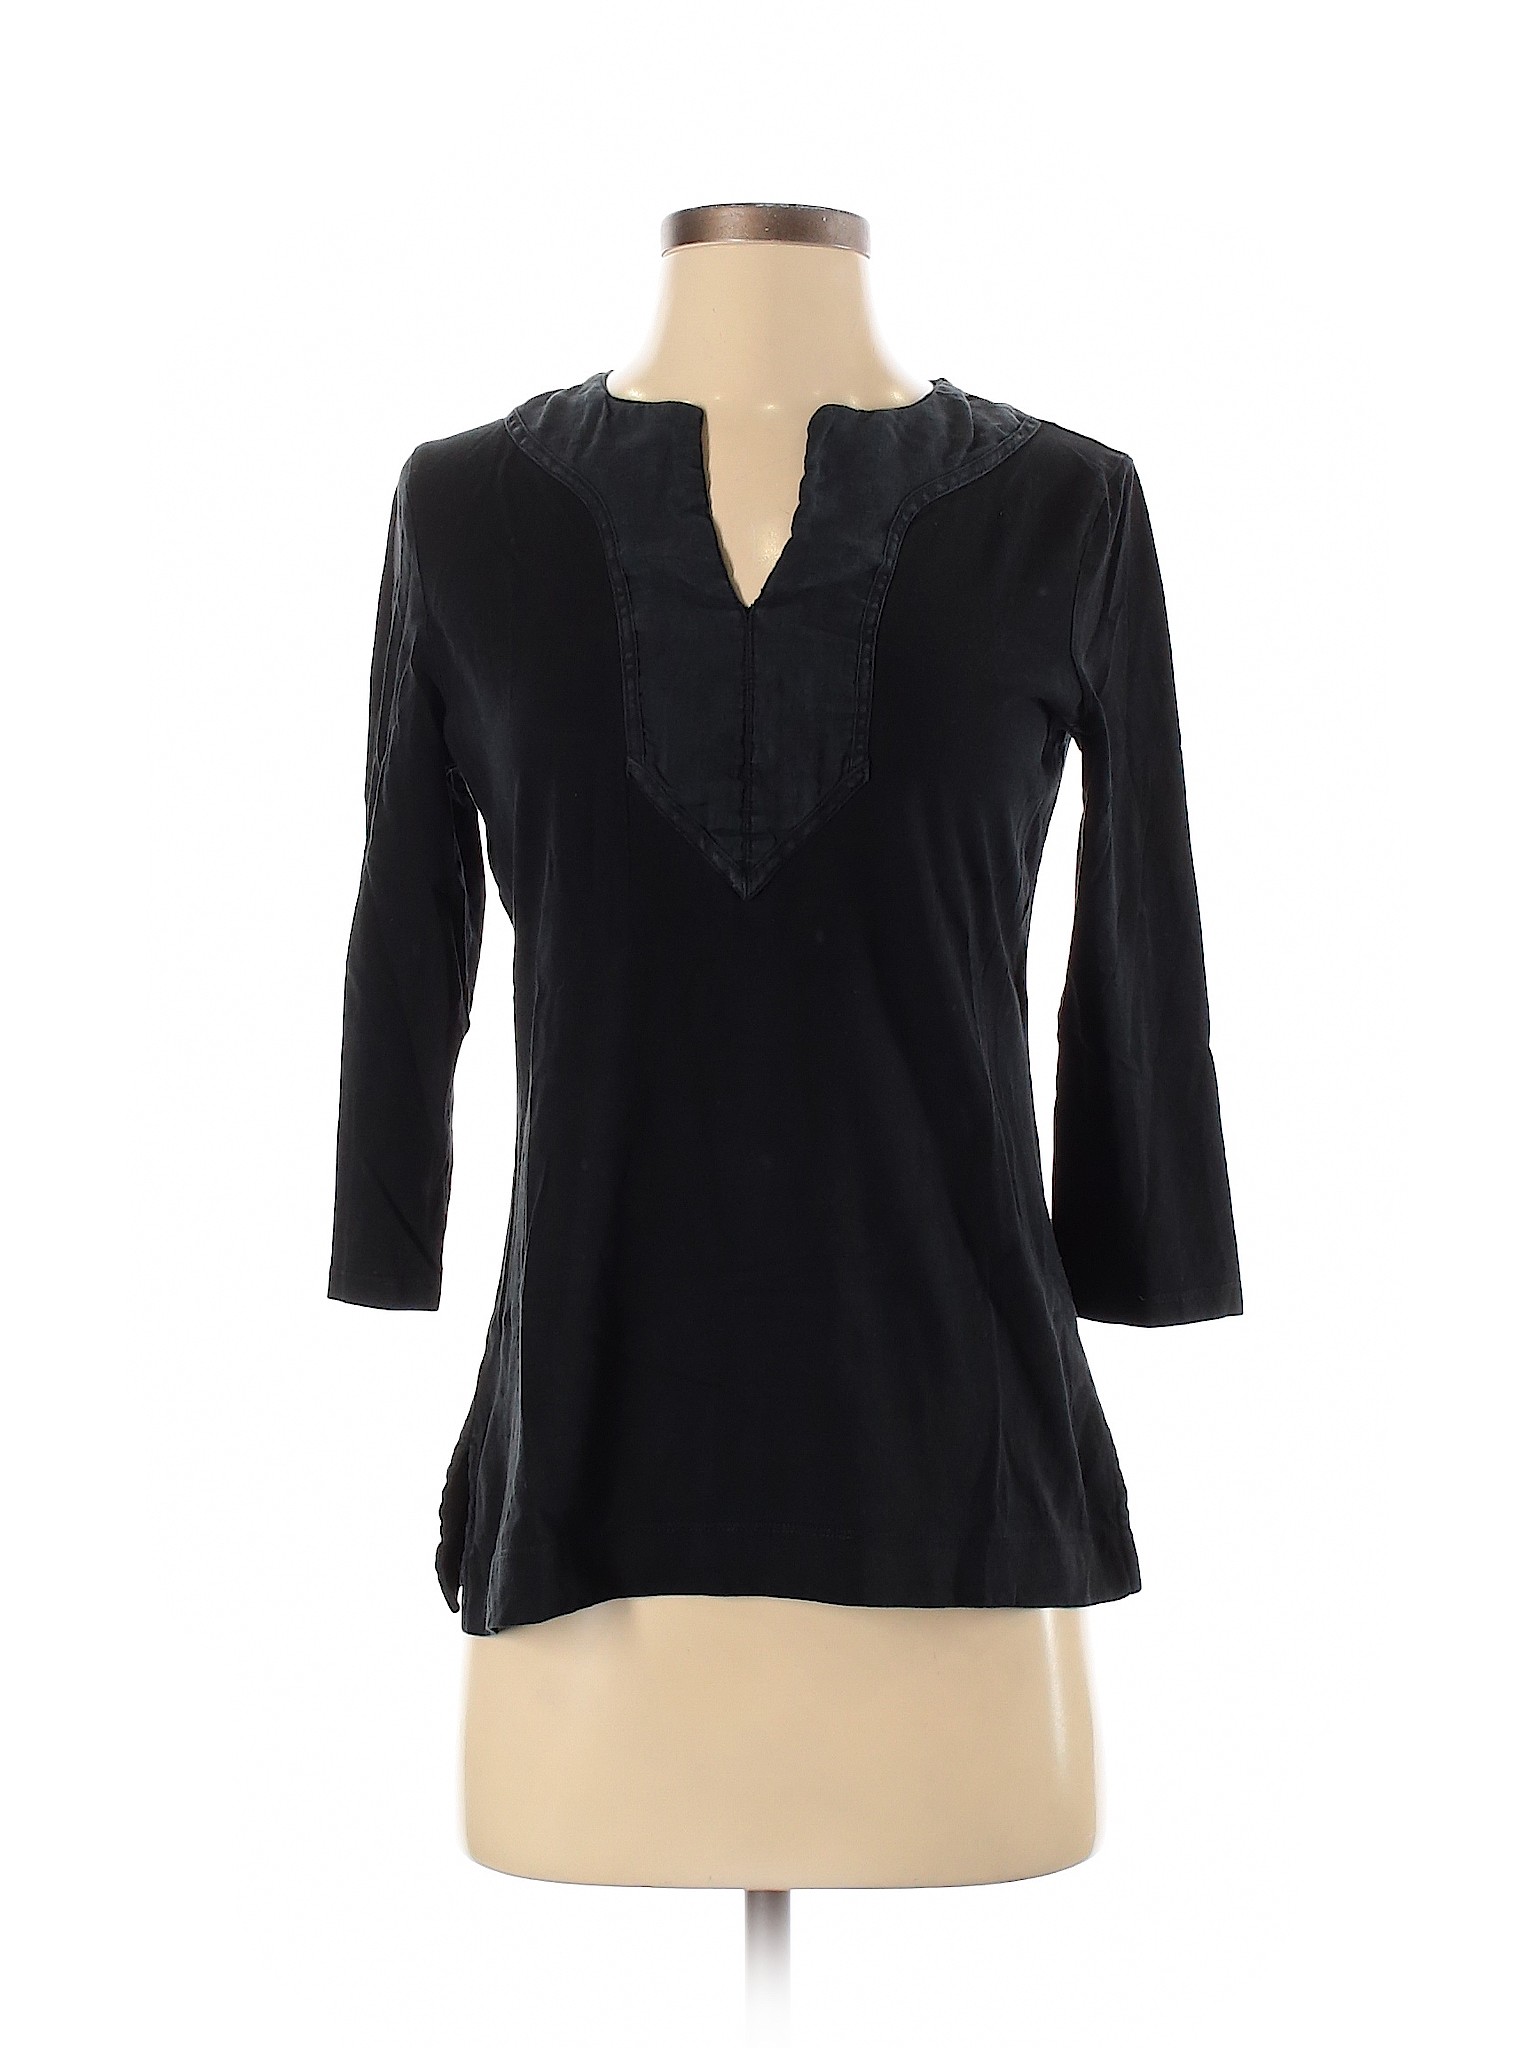 Lauren by Ralph Lauren Women Black 3/4 Sleeve T-Shirt S | eBay